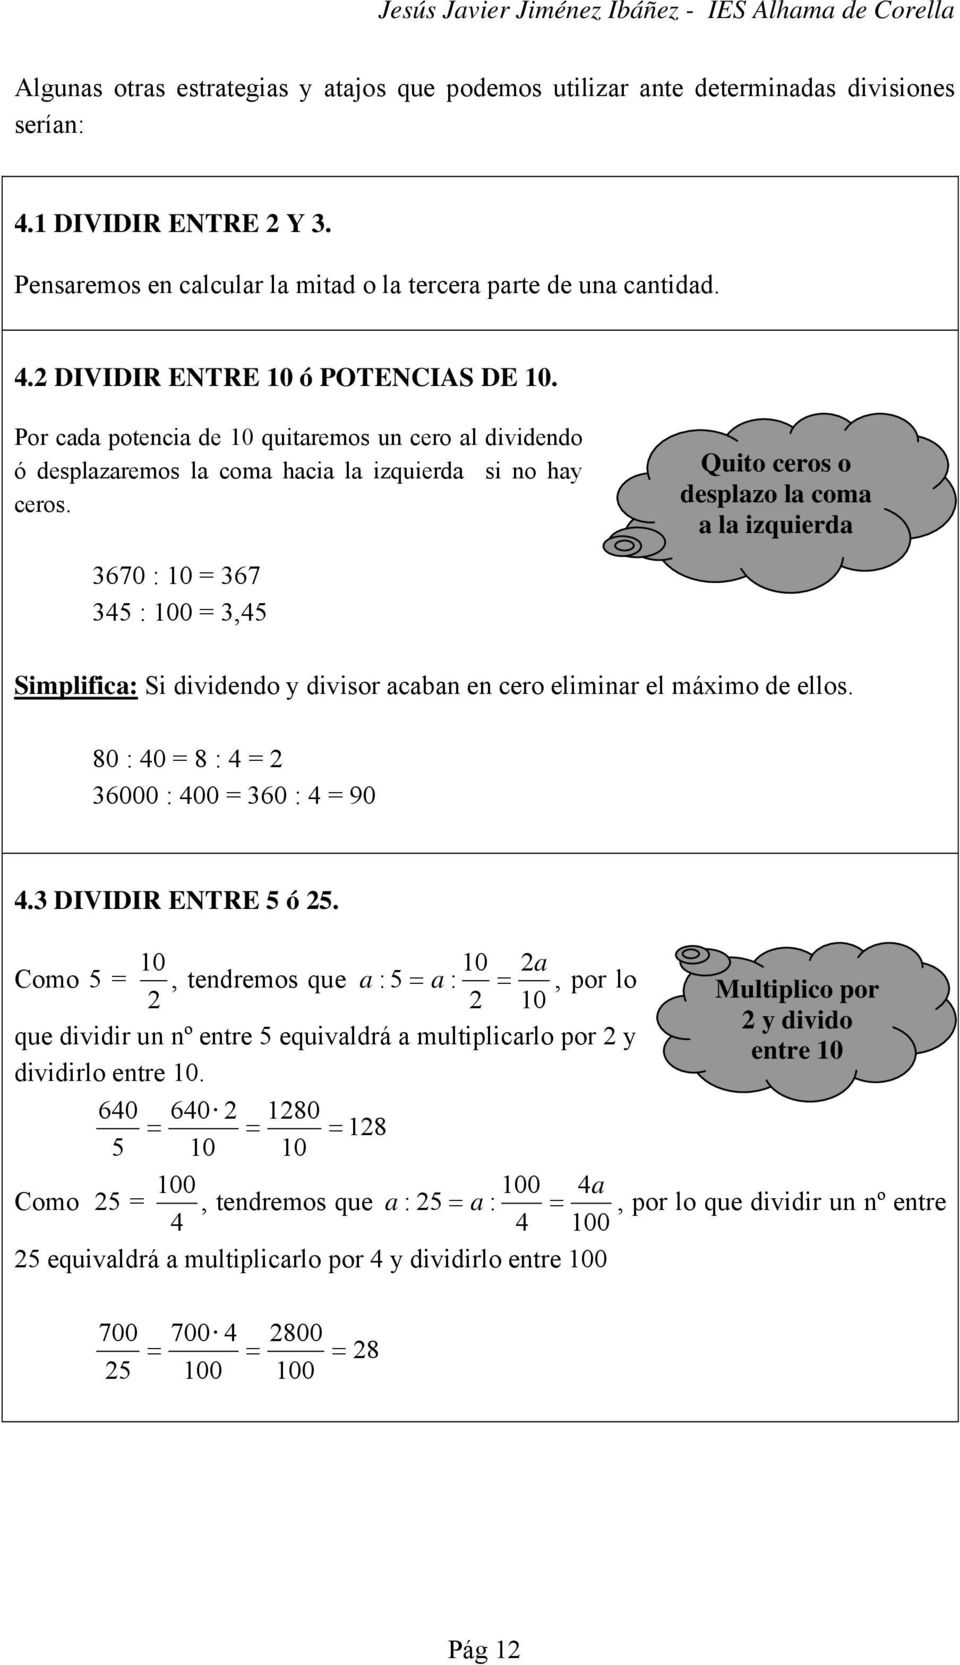 Quito ceros o desplazo la coma a la izquierda 670 : 10 = 67 45 : 100 =,45 Simplifica: Si dividendo y divisor acaban en cero eliminar el máximo de ellos. 80 : 40 = 8 : 4 = 2 6000 : 400 = 60 : 4 = 90 4.